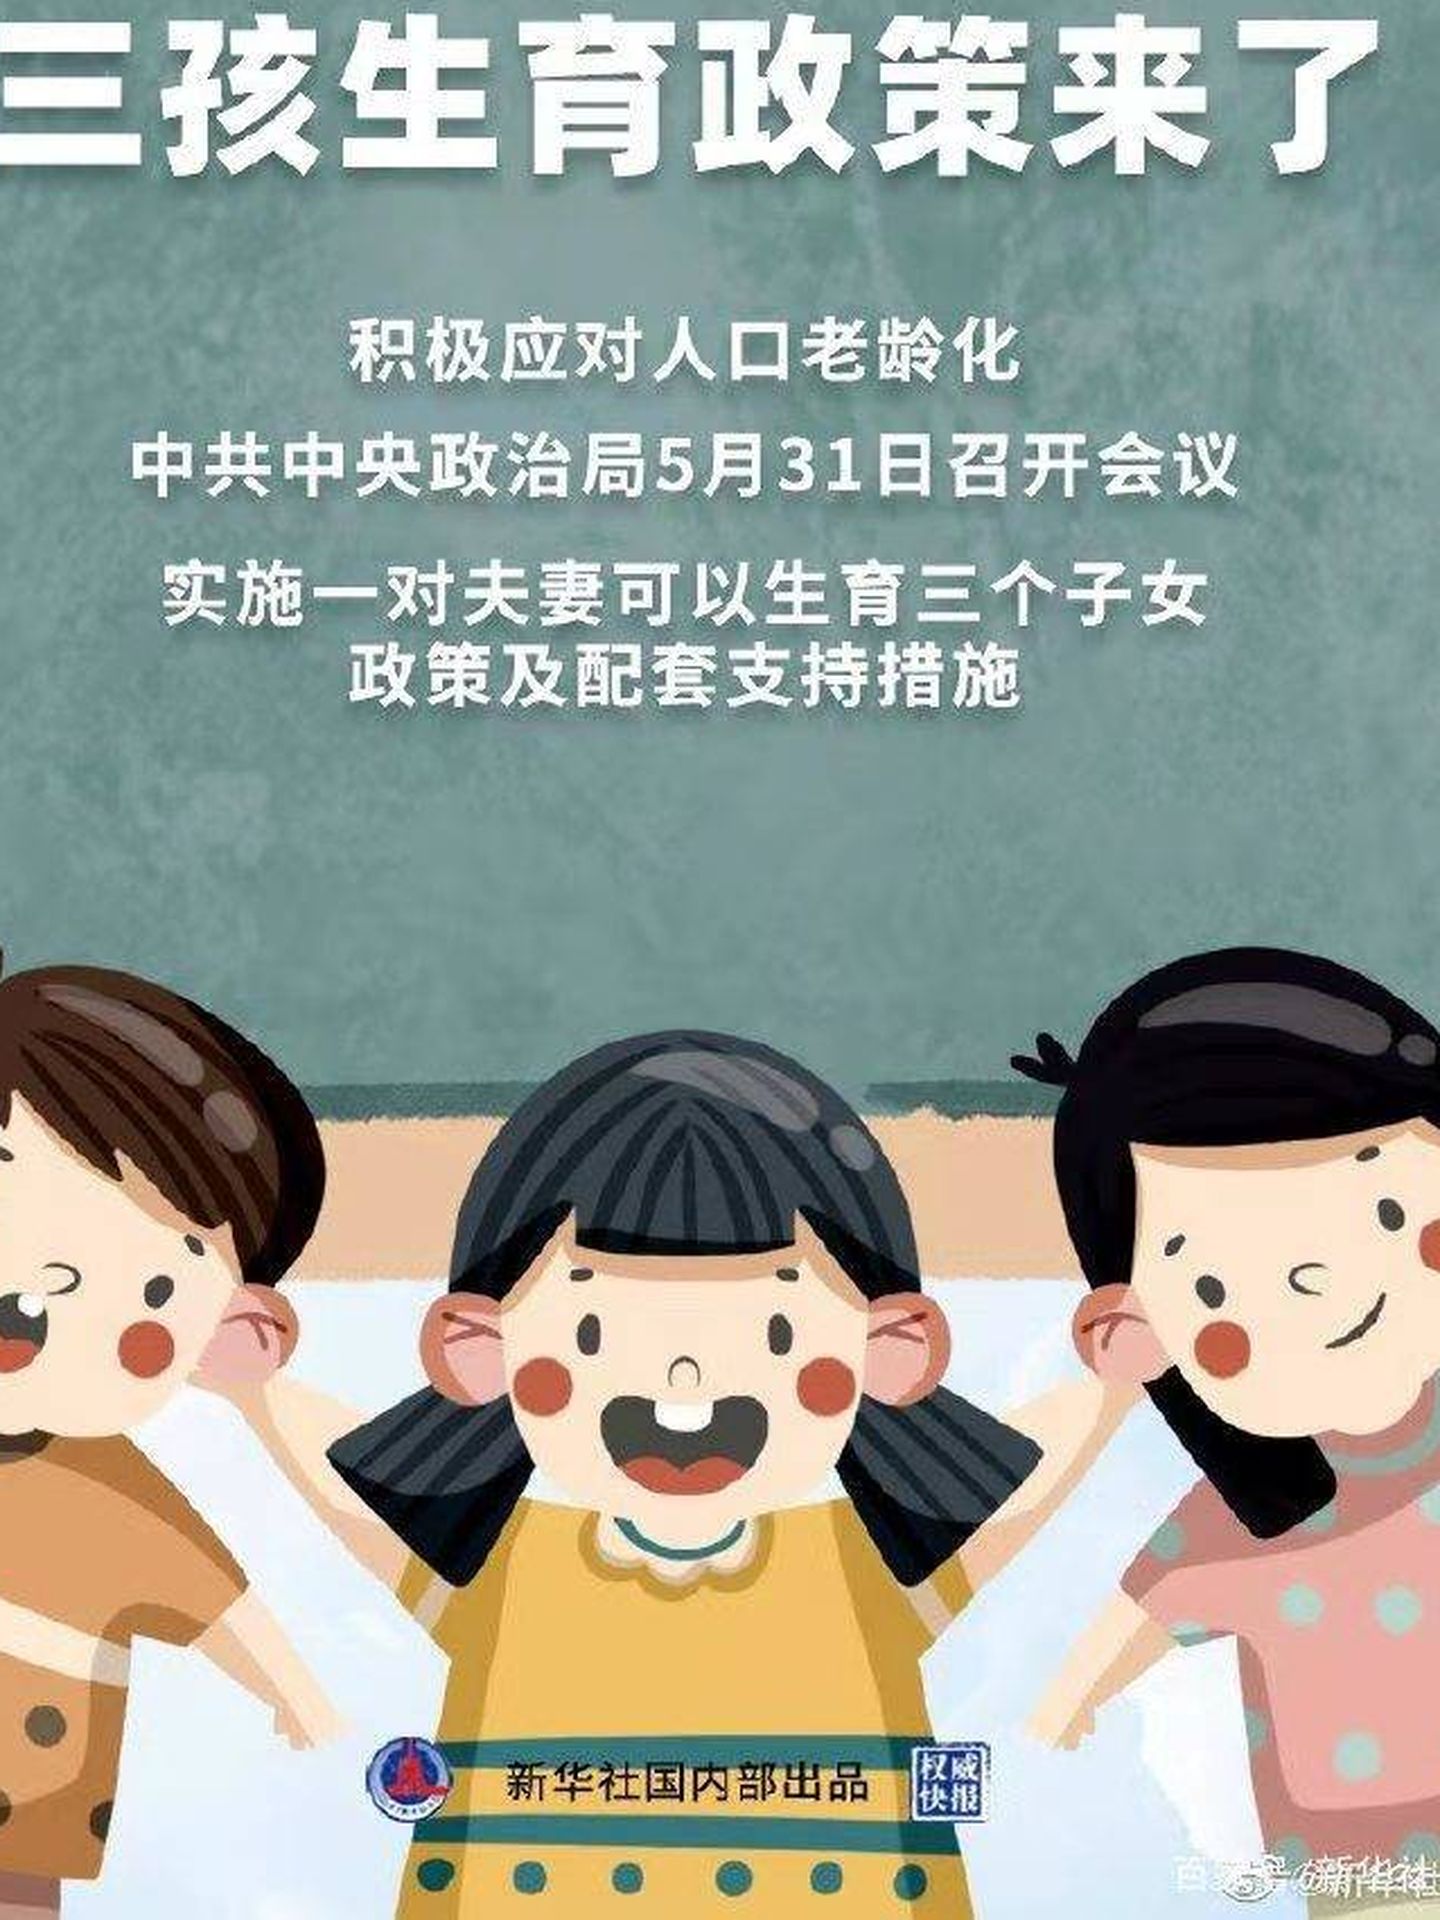 Cartel promocional oficial de la poli?tica del tercer hijo. (Xinhua)